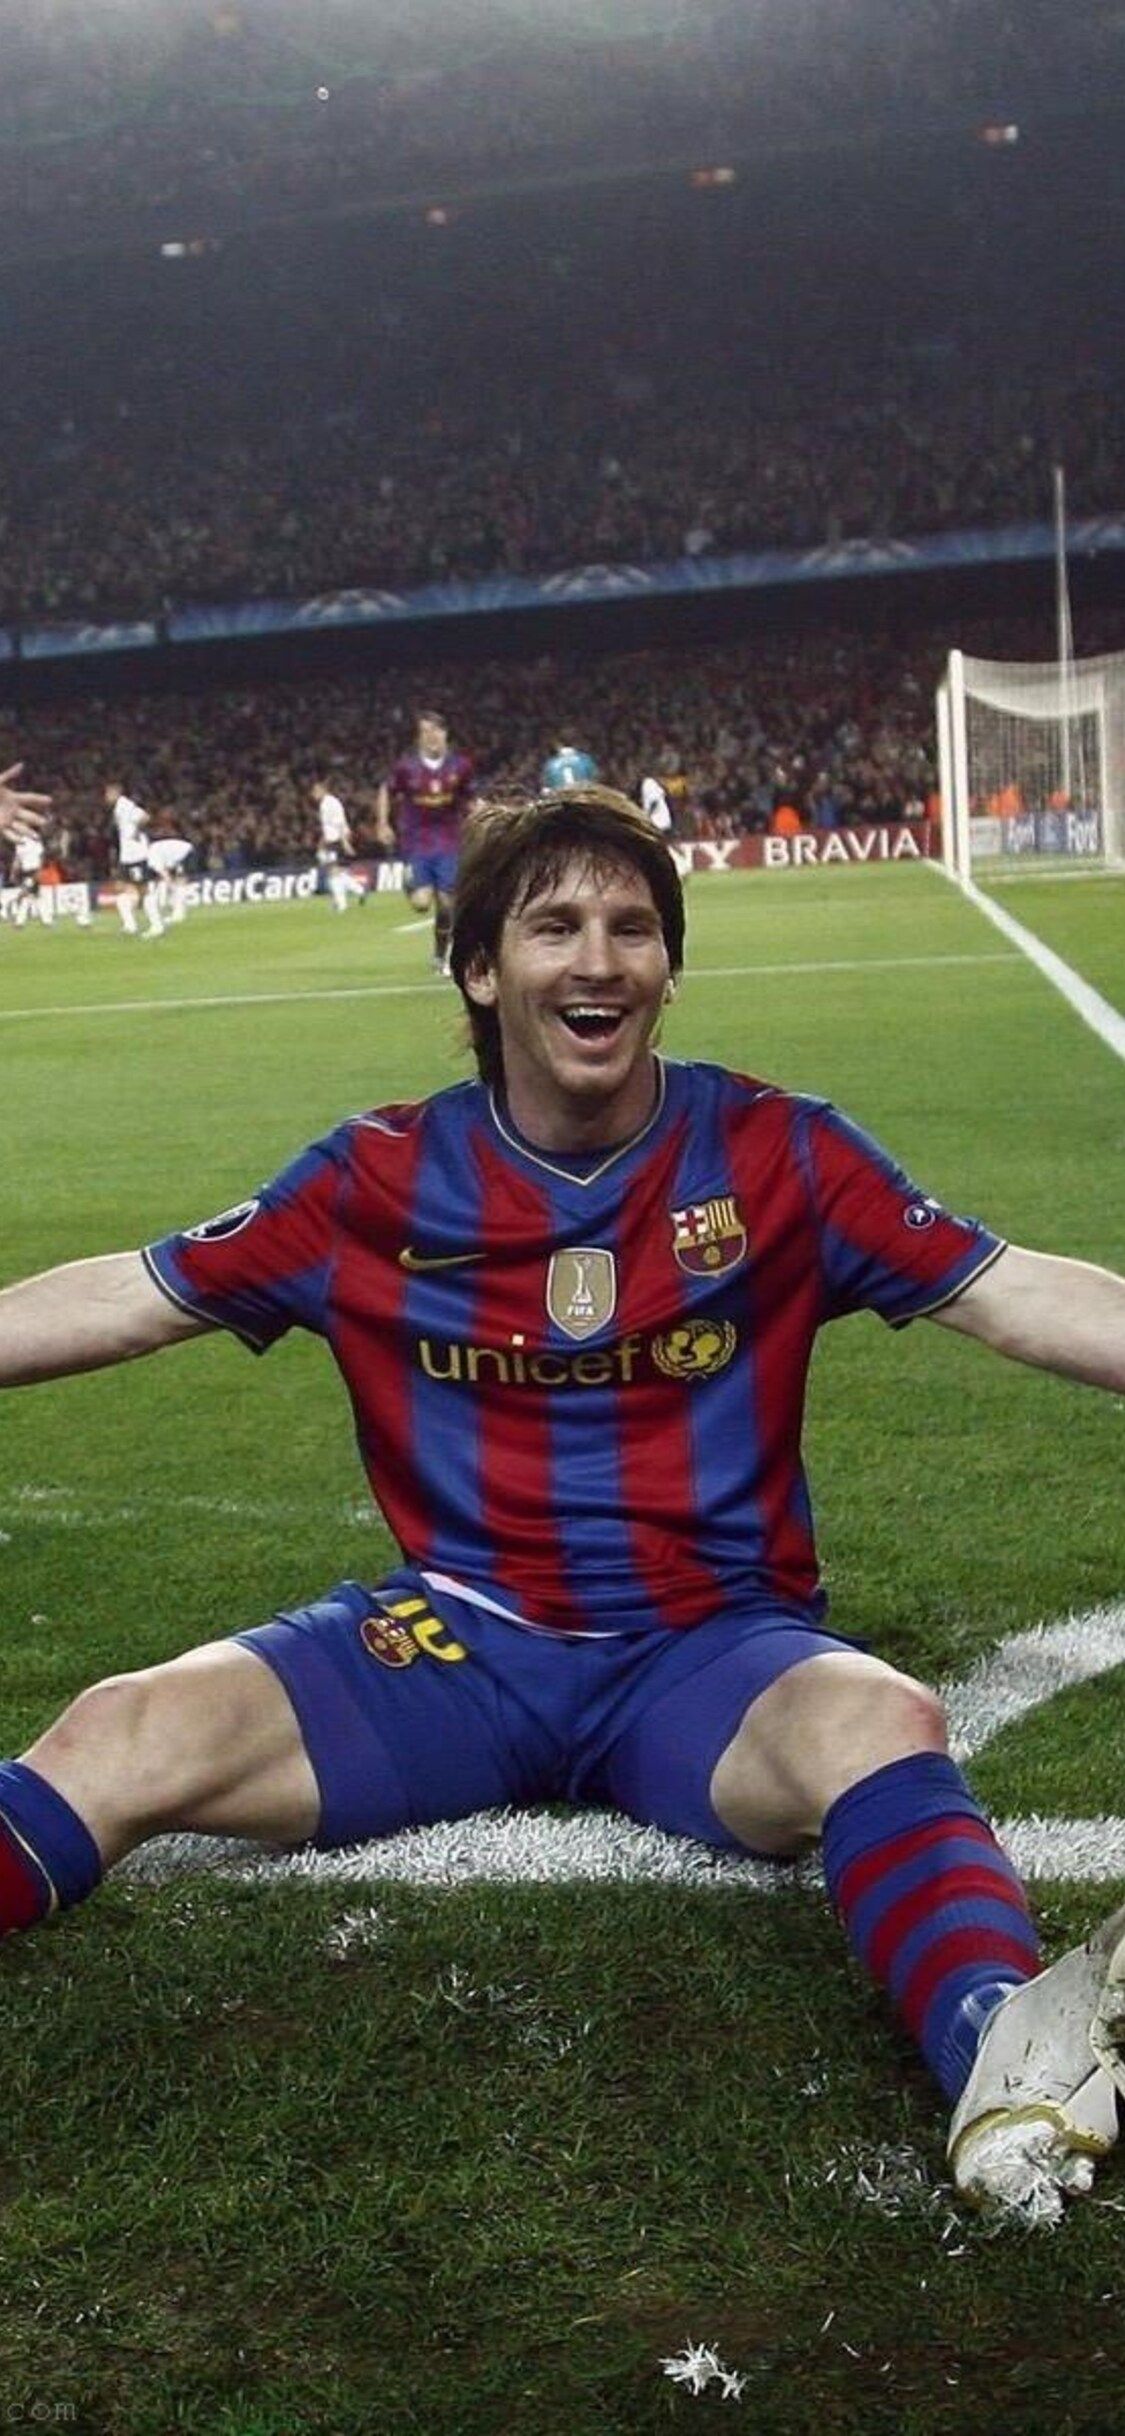 Bạn là Fan Messi số một? Thì đừng bỏ lỡ bức ảnh Messi 10 độ phân giải cao độc đáo này - nó không chỉ là một phong cách thời trang hấp dẫn, mà còn là món quà dành cho những người yêu thích Messi trong trái tim.